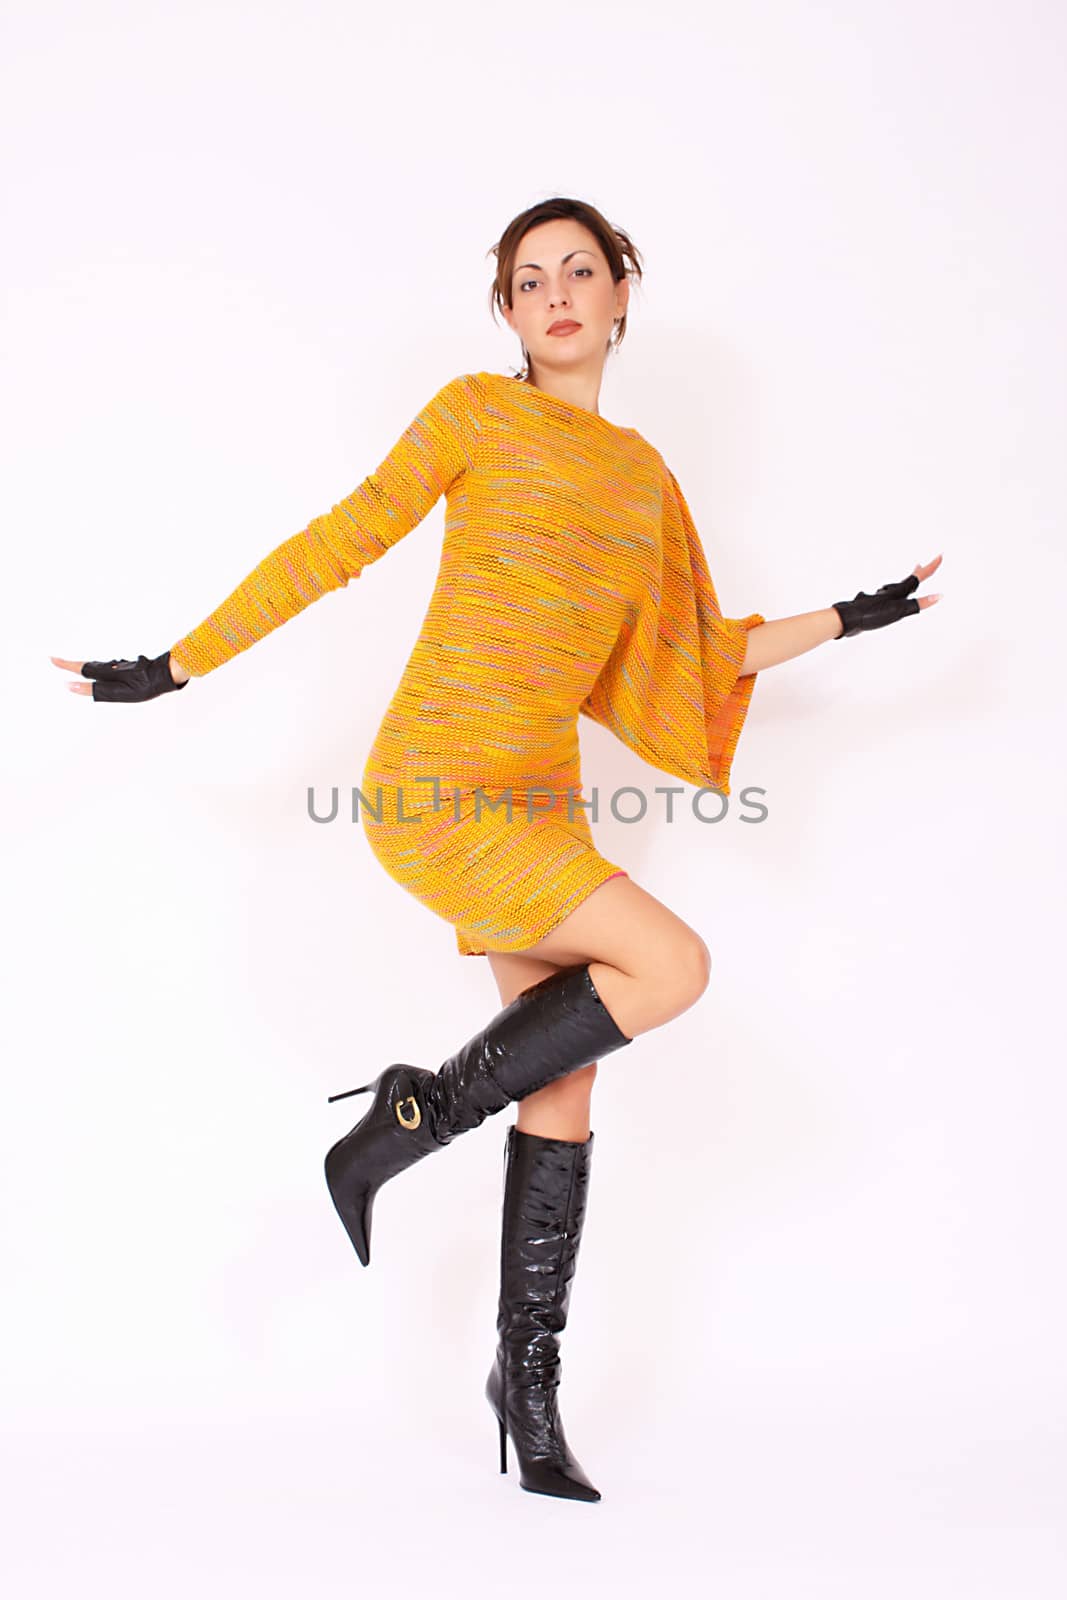 Beautiful girl in yellow dress by dukibu